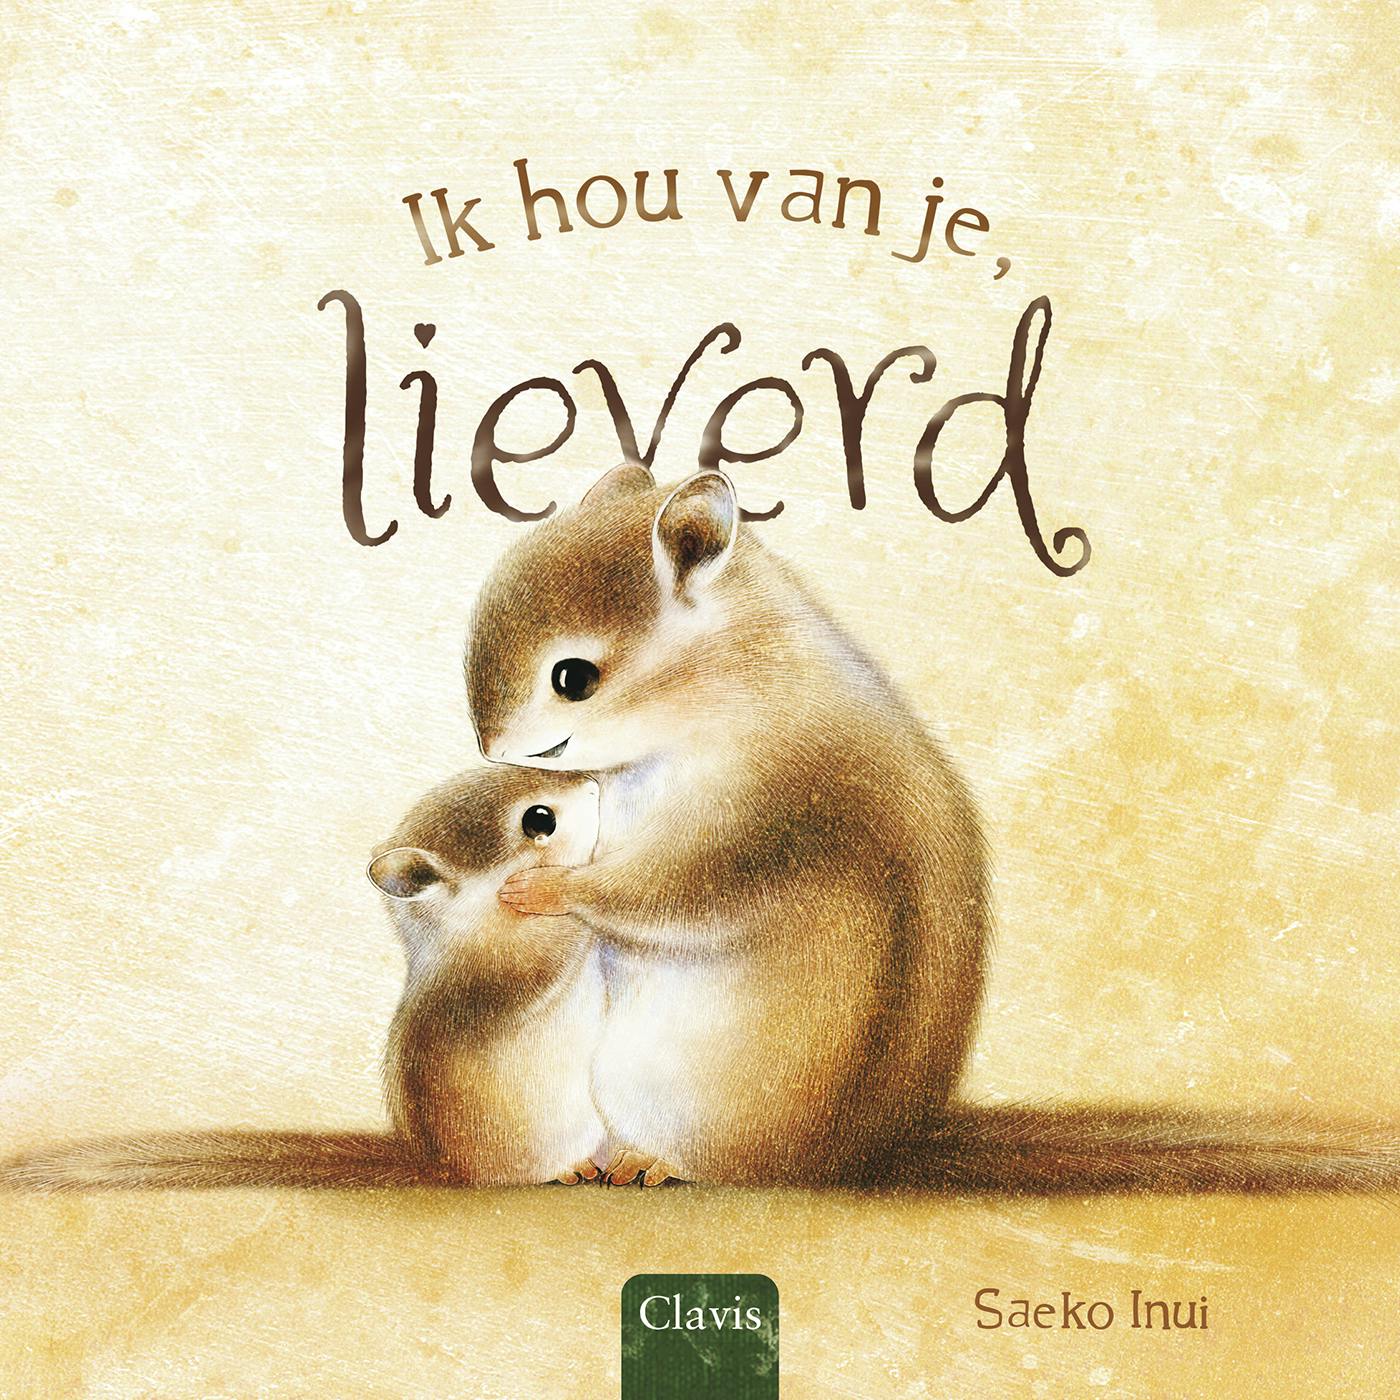 Coverbeeld van Ik hou van je, lieverd ISBN 9789044851632 Titel Ik hou van je, lieverdAuteur Saeko Inui Illustrator Saeko Inui